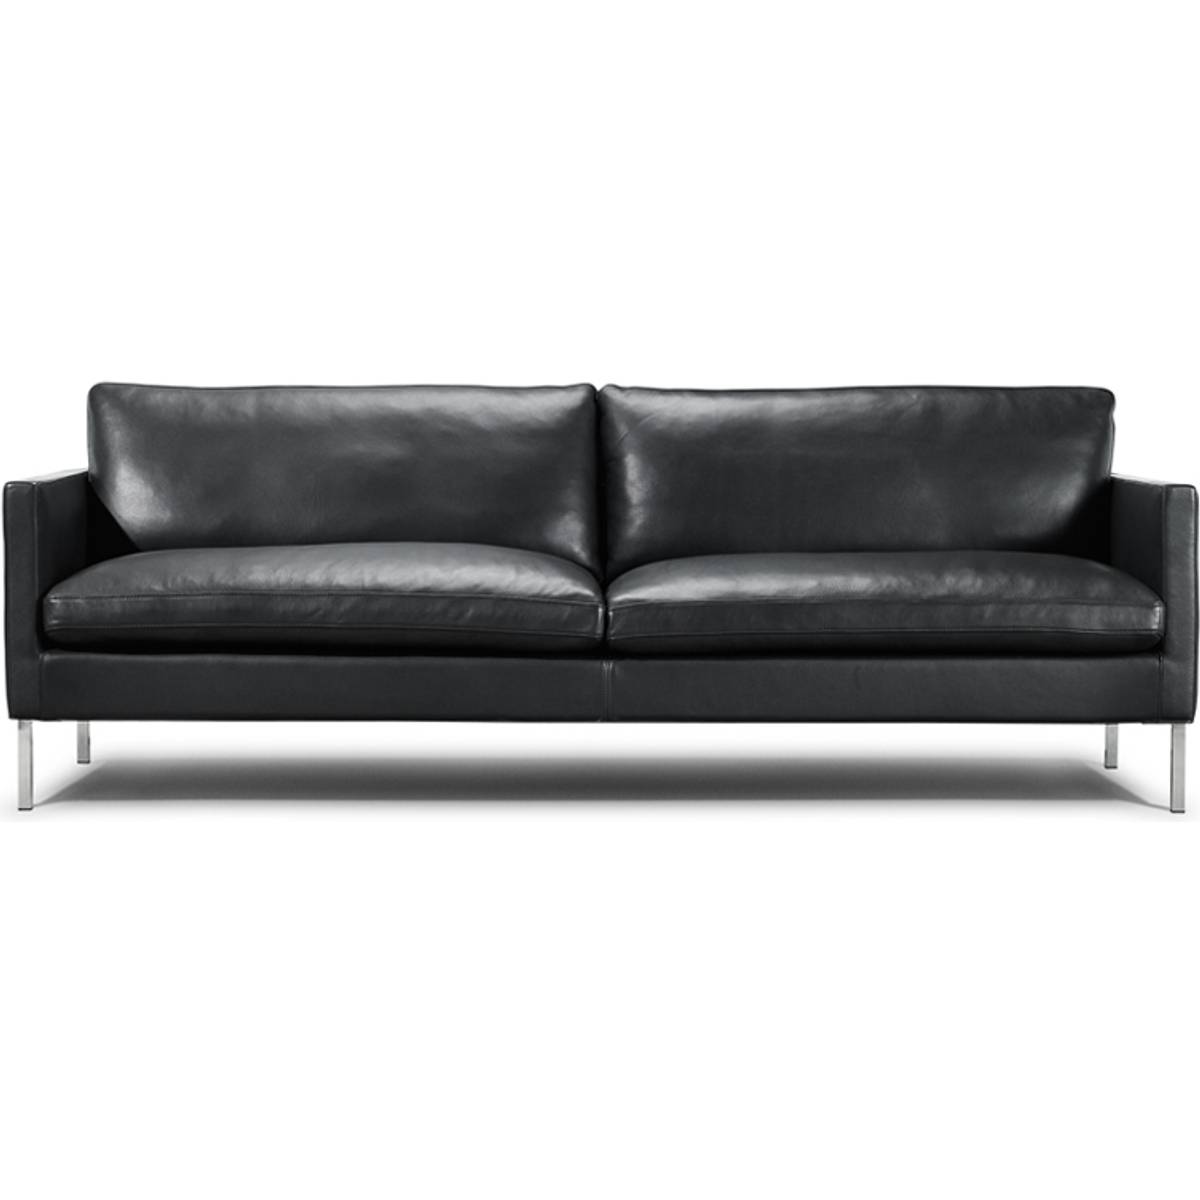 3 pers sofa i sort læder møbler • Find billigste pris hos ...